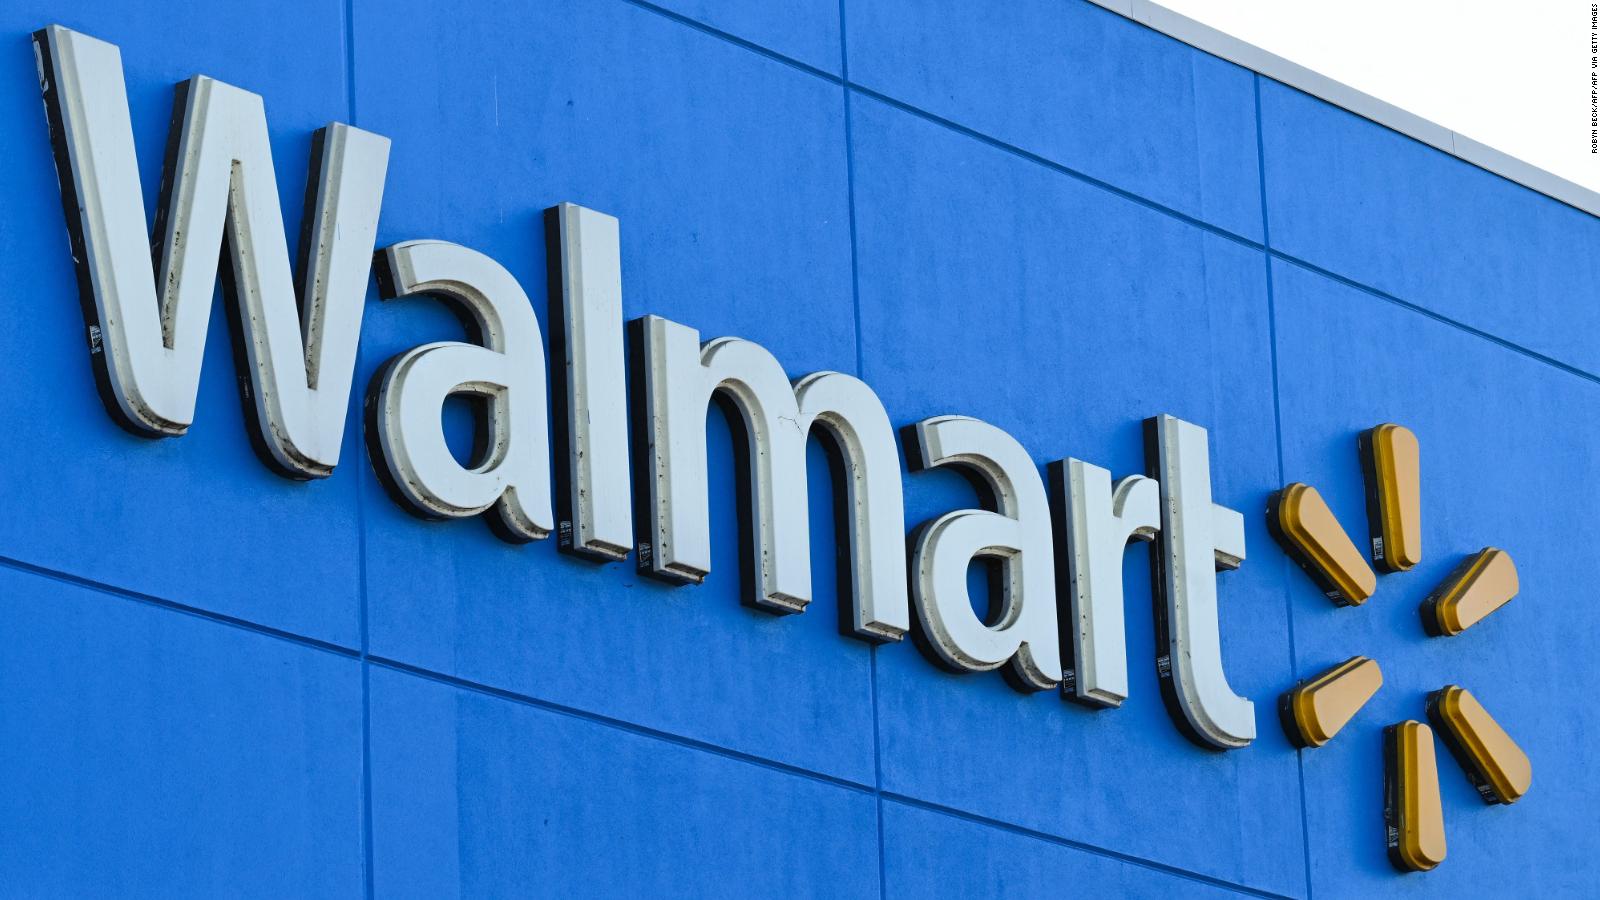 Walmart entra en el Metaverso con dos experiencias inmersivas